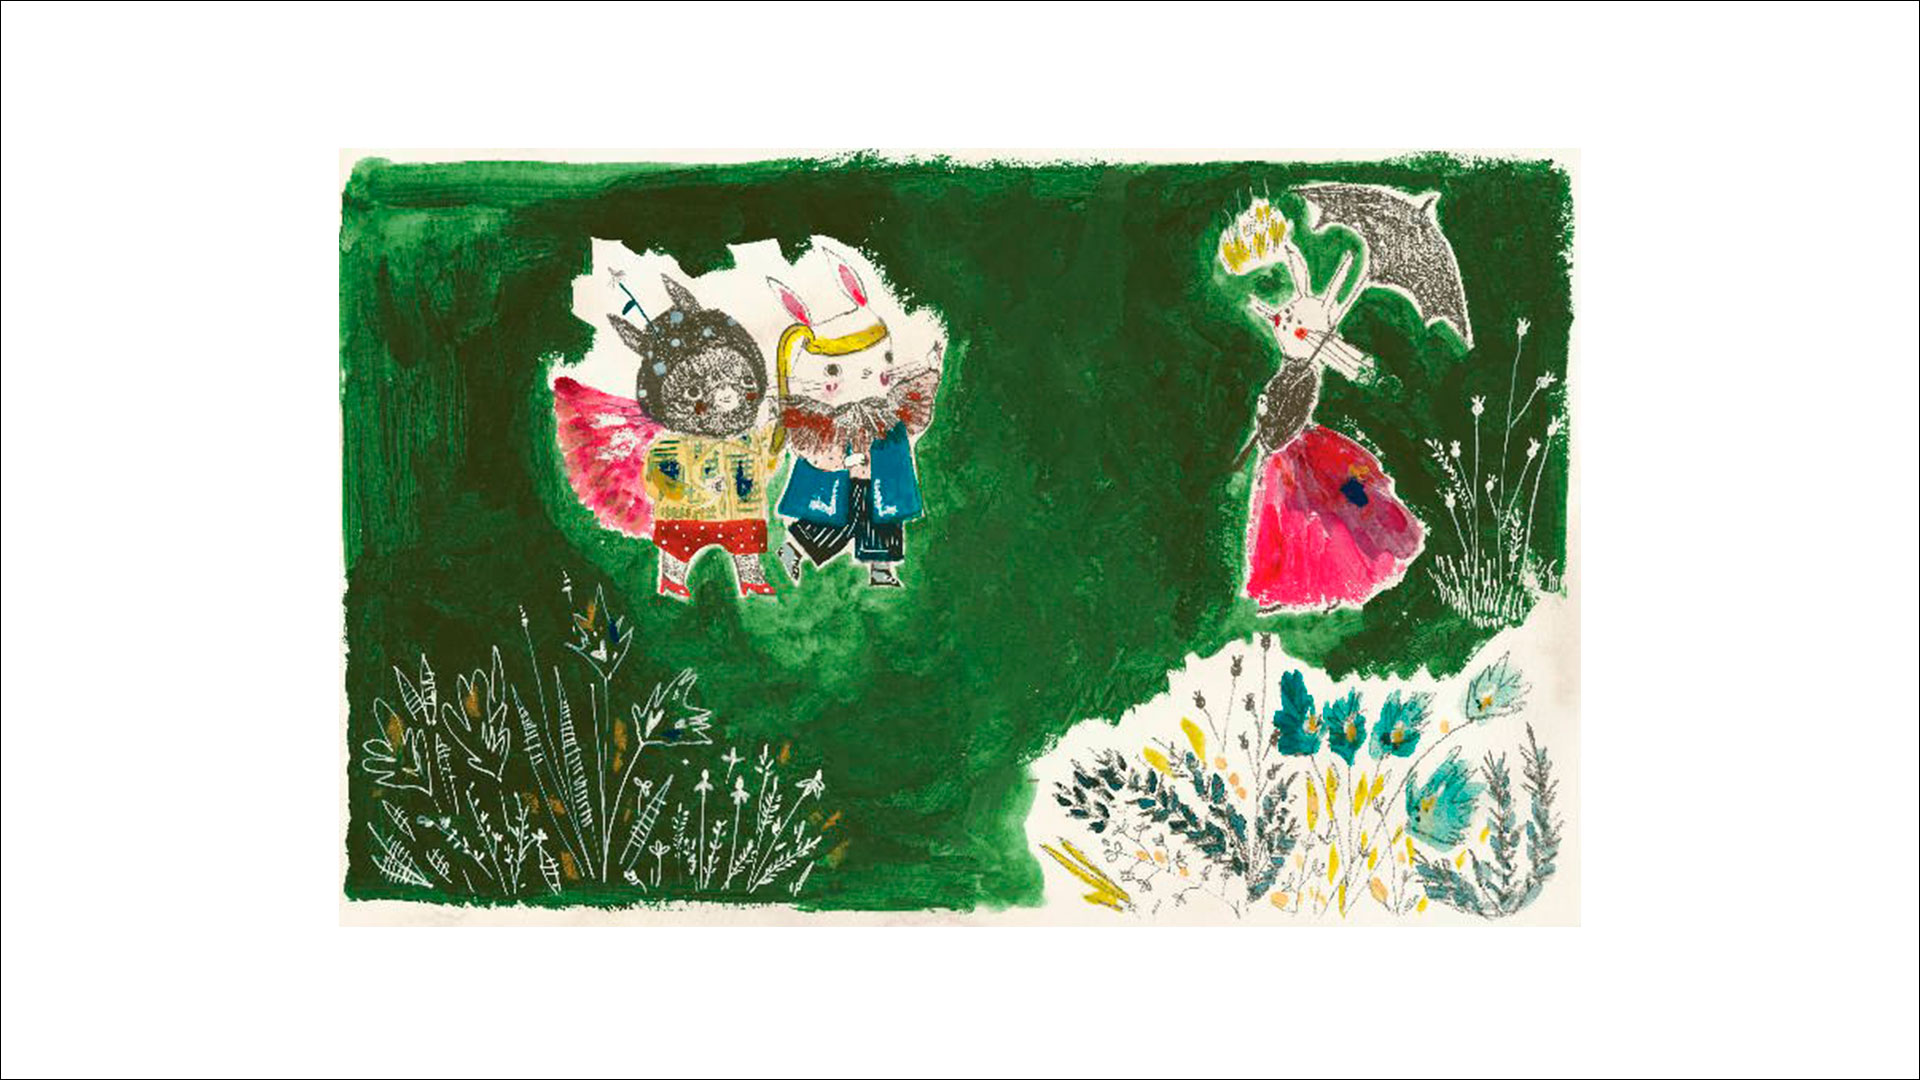 Ilustrações do livro"Pode Pegar" mostram coelhos brincando em um jardim